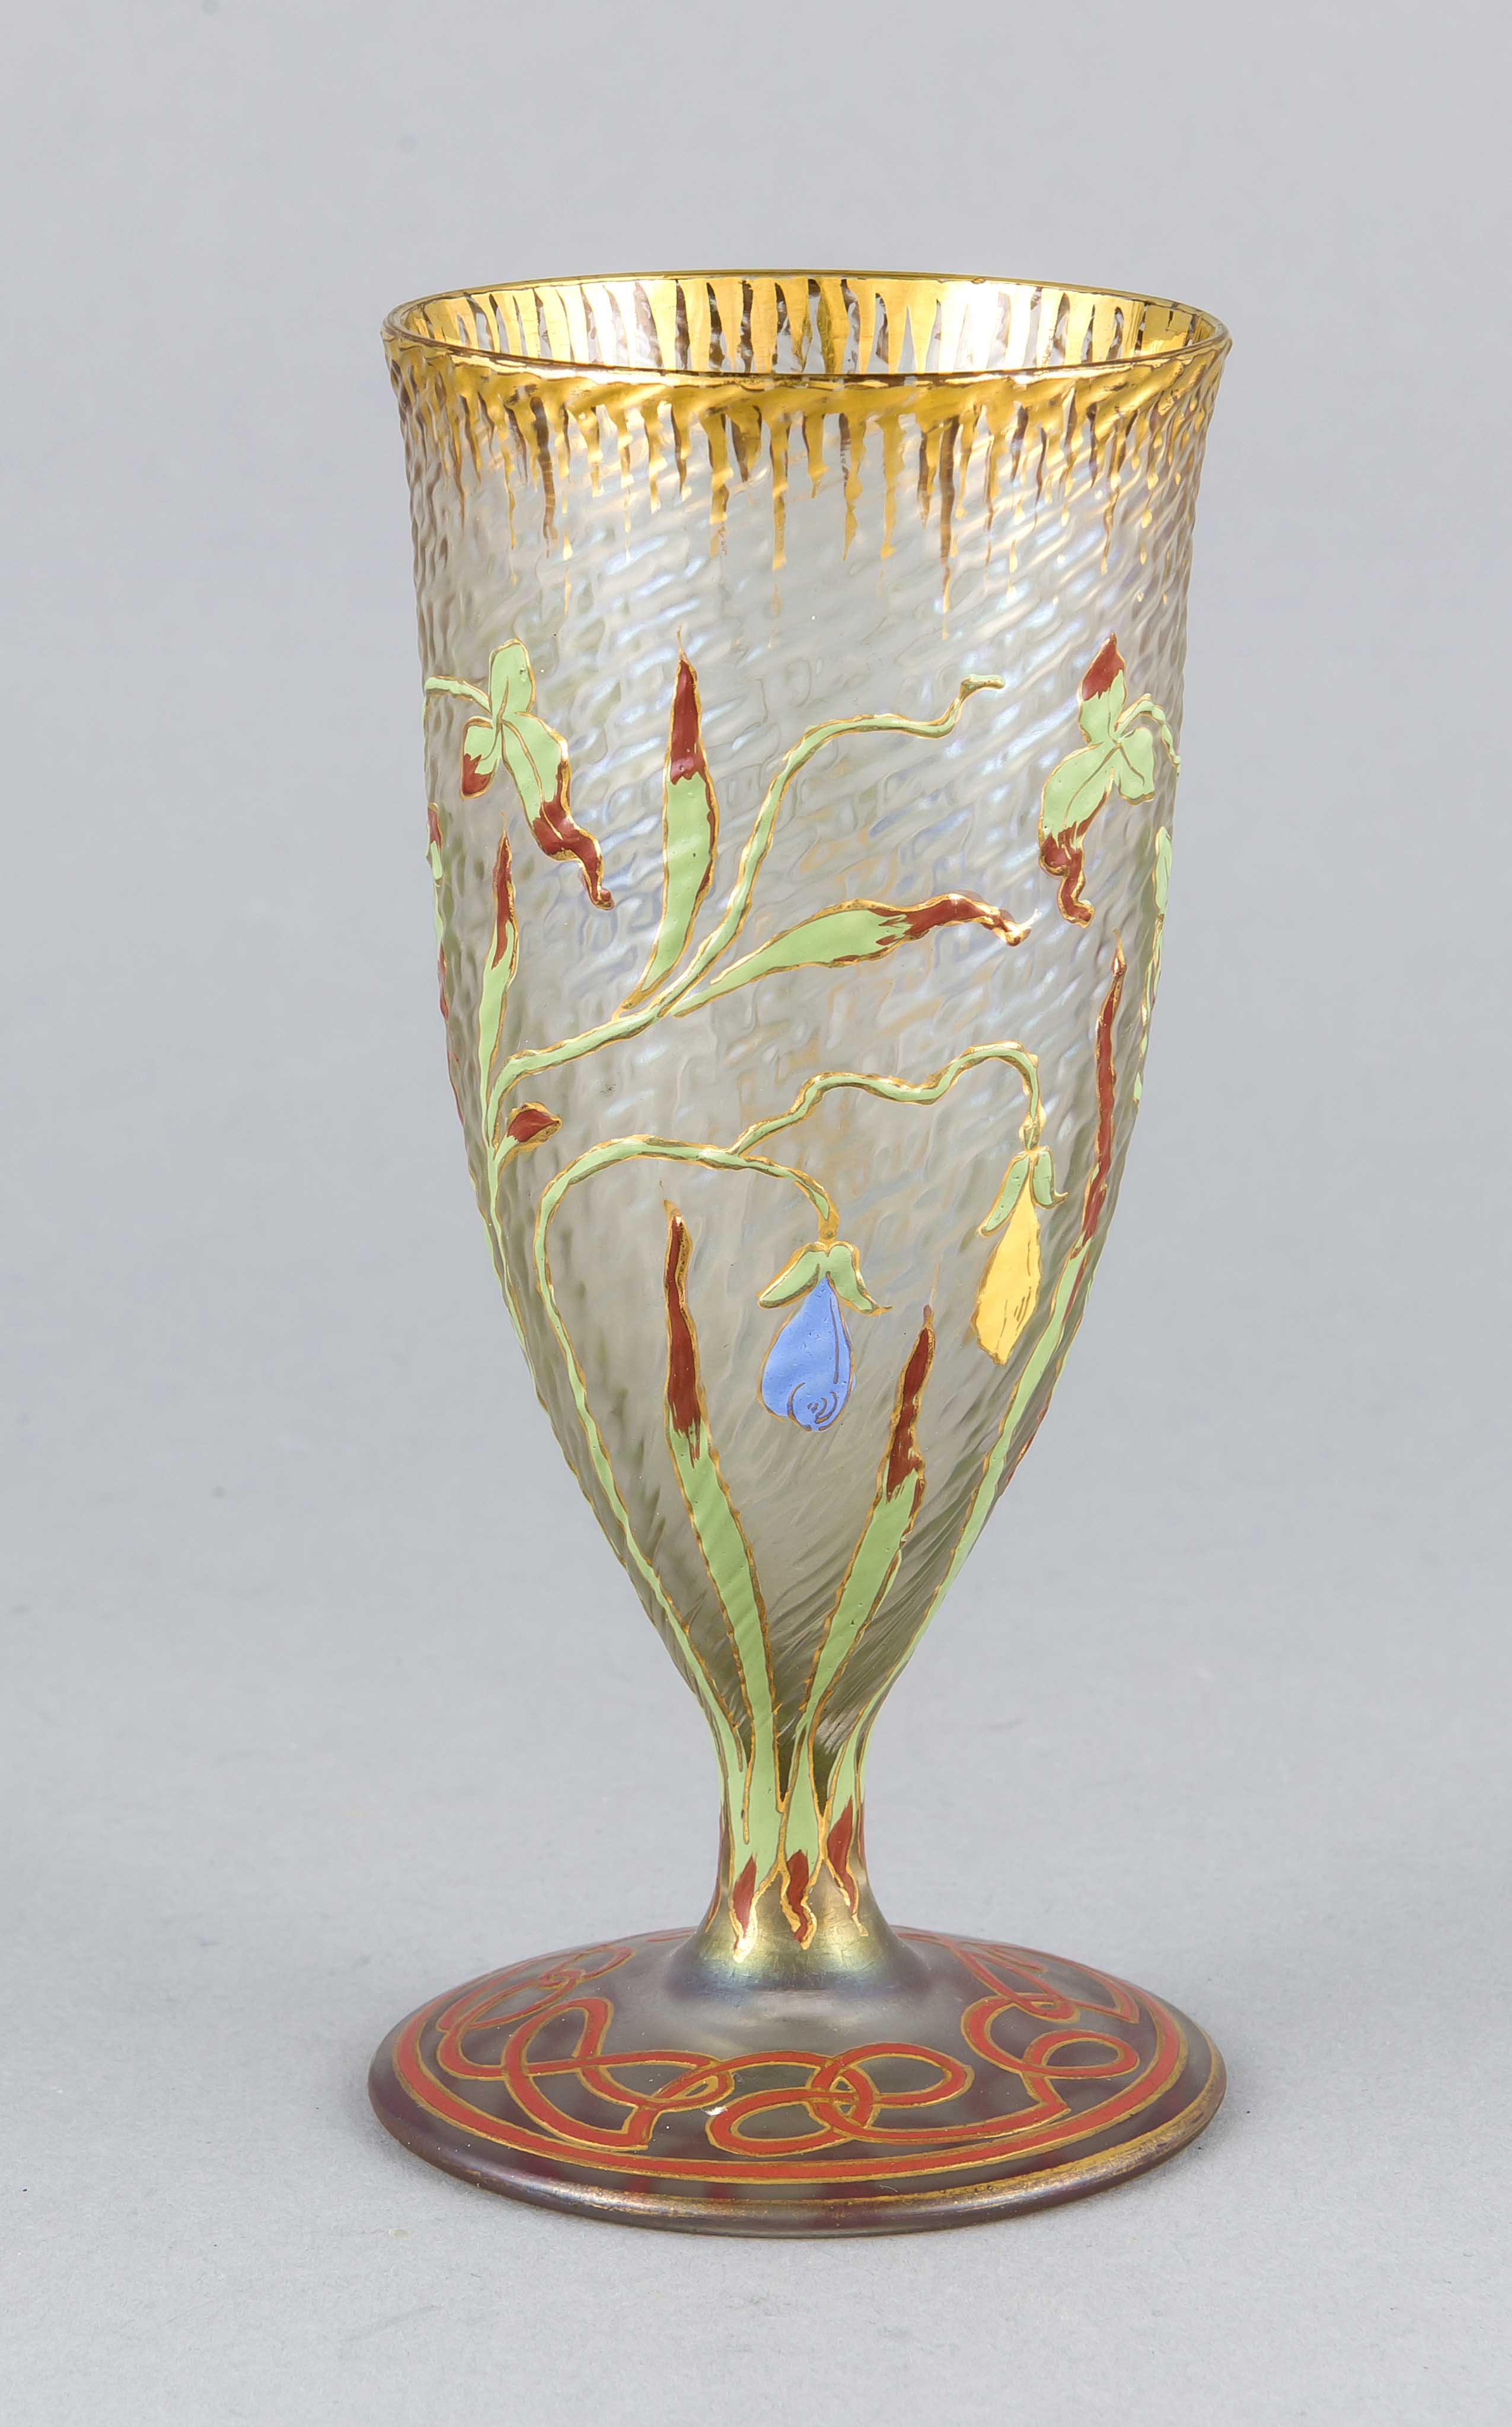 Jugendstil-Glas, Österreich, um 1900, Lobmeyr, Wien, runder Stand, Kuppa in Tulpenform,Stand mit